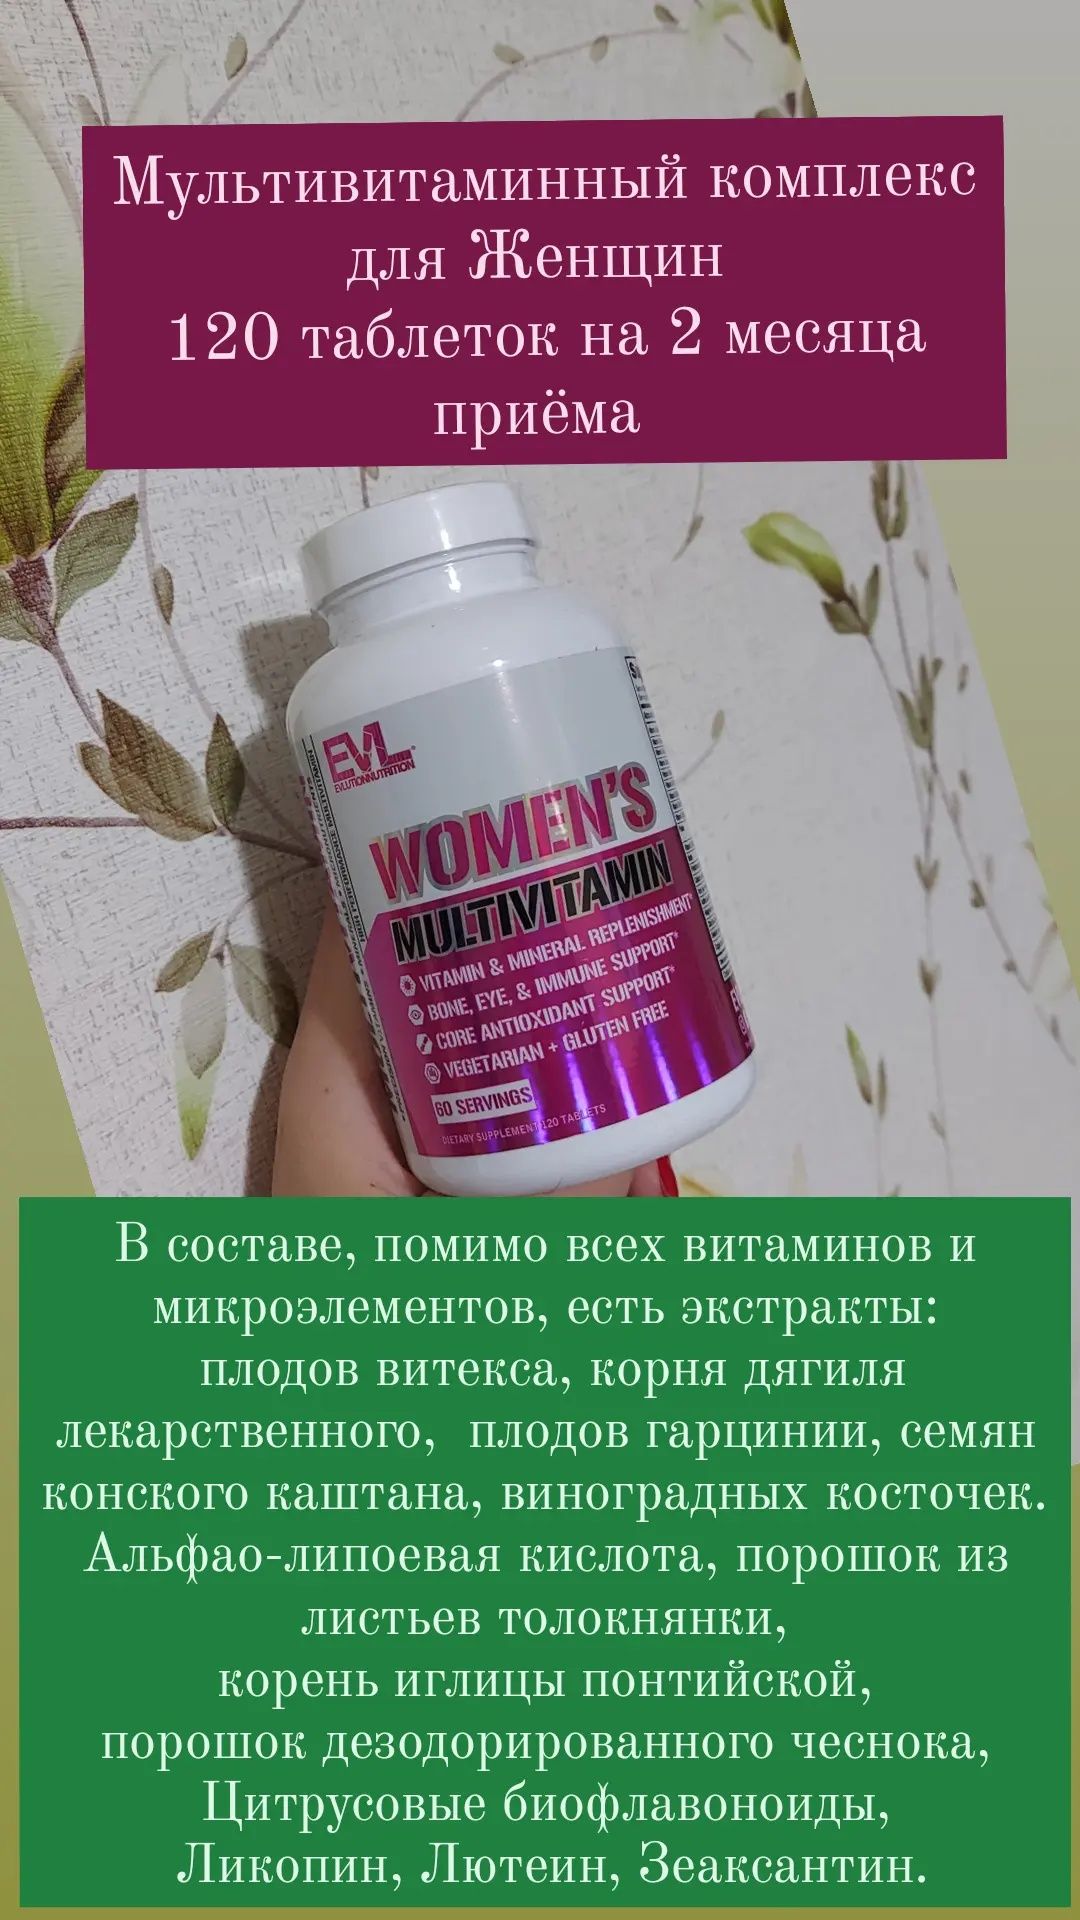 Мультивитаминный комплекс для Женщин. 120 таблеток на 2 месяца приёма!